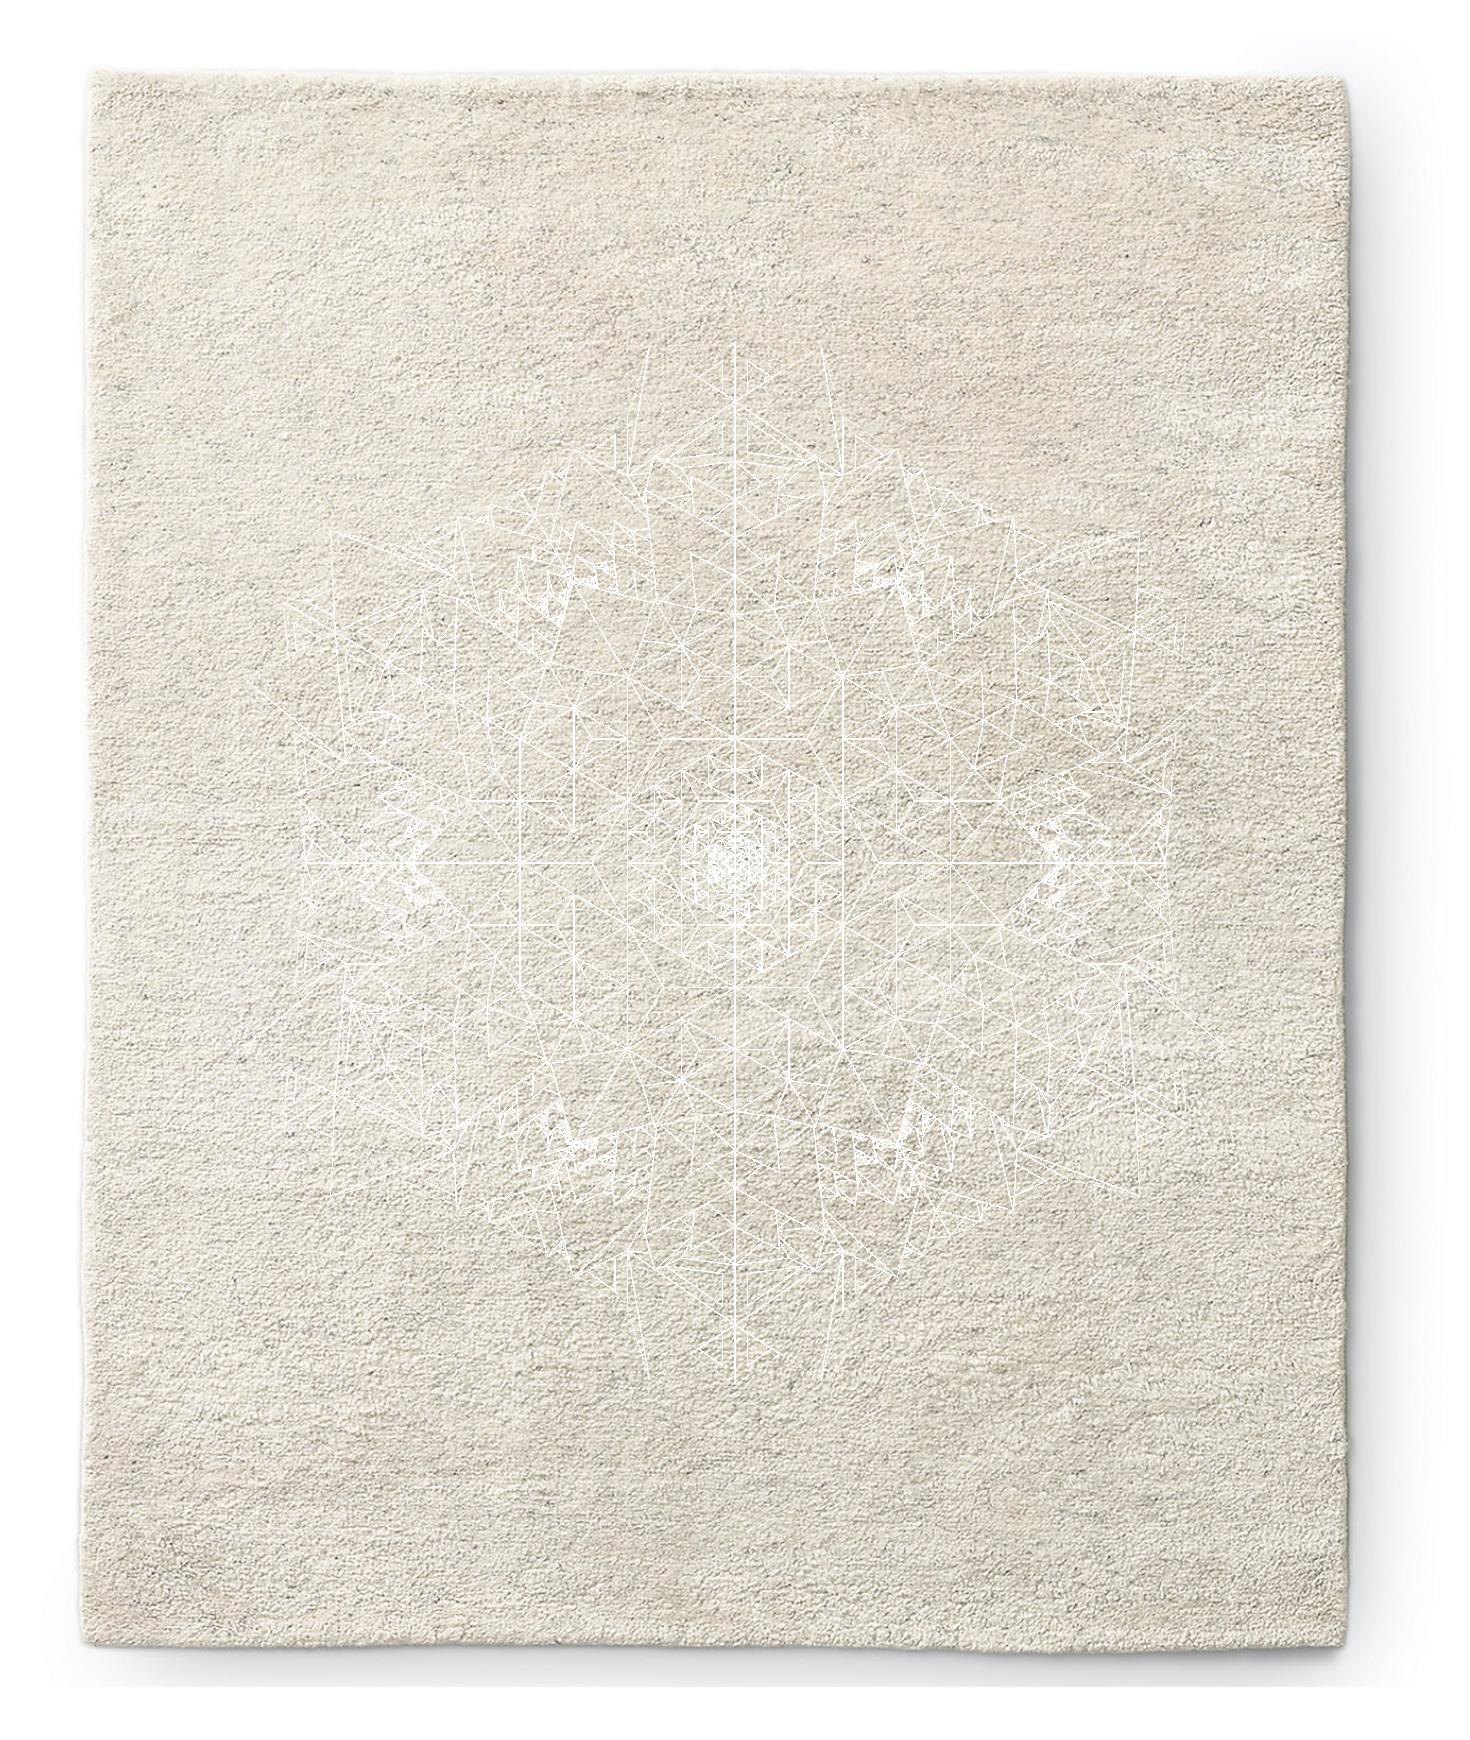 Inspiriert von den Prinzipien der heiligen Geometrie, ist dieser Teppich aus handgesponnener Wolle ein anspruchsvolles Stück für jedes Zuhause. Die komplizierten, ineinandergreifenden Geometrien vermitteln ein tiefes Gefühl von zeitloser Eleganz.